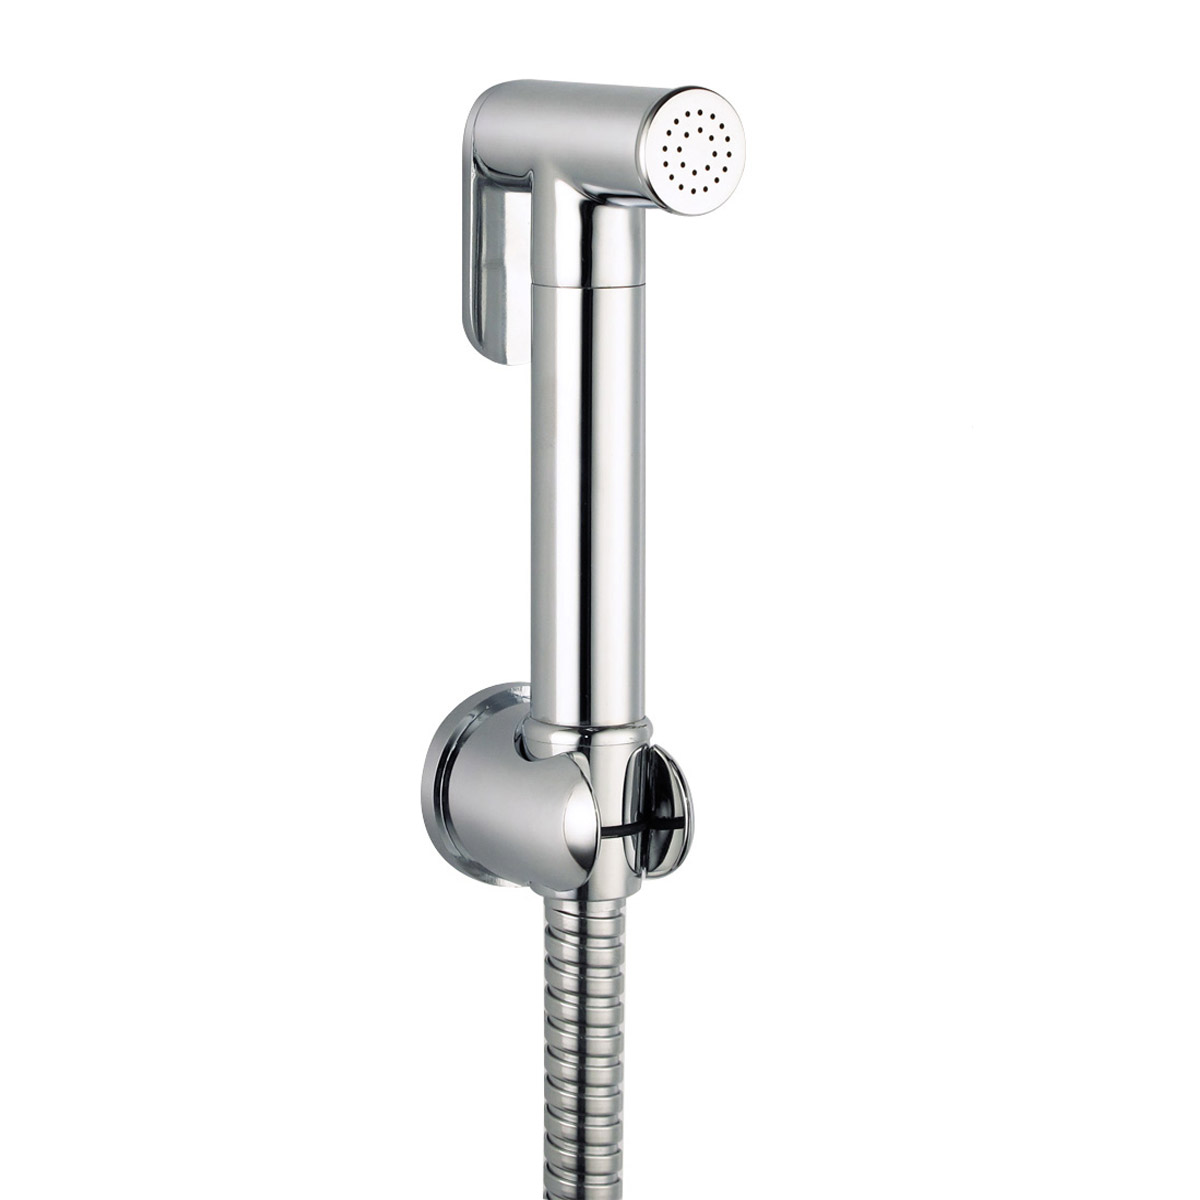 Handheld-Bidet-Shower-Toilet-Seat-Shattaf-Bathroom-Kitchen-Shower-Head-Sprayer-1092567